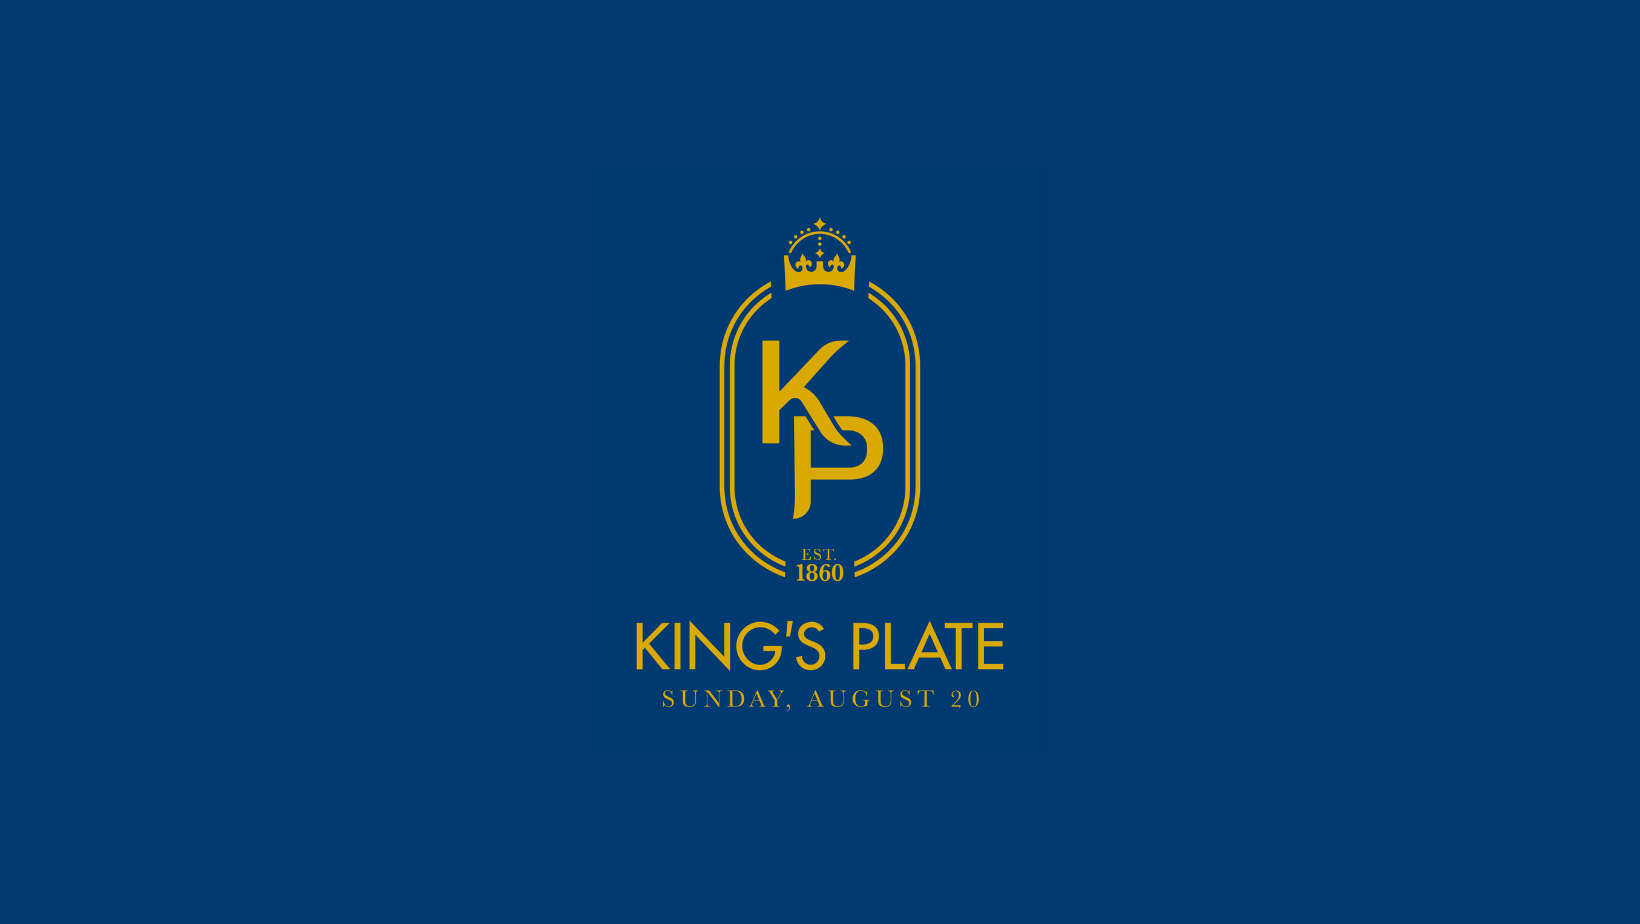 King's Plate logo